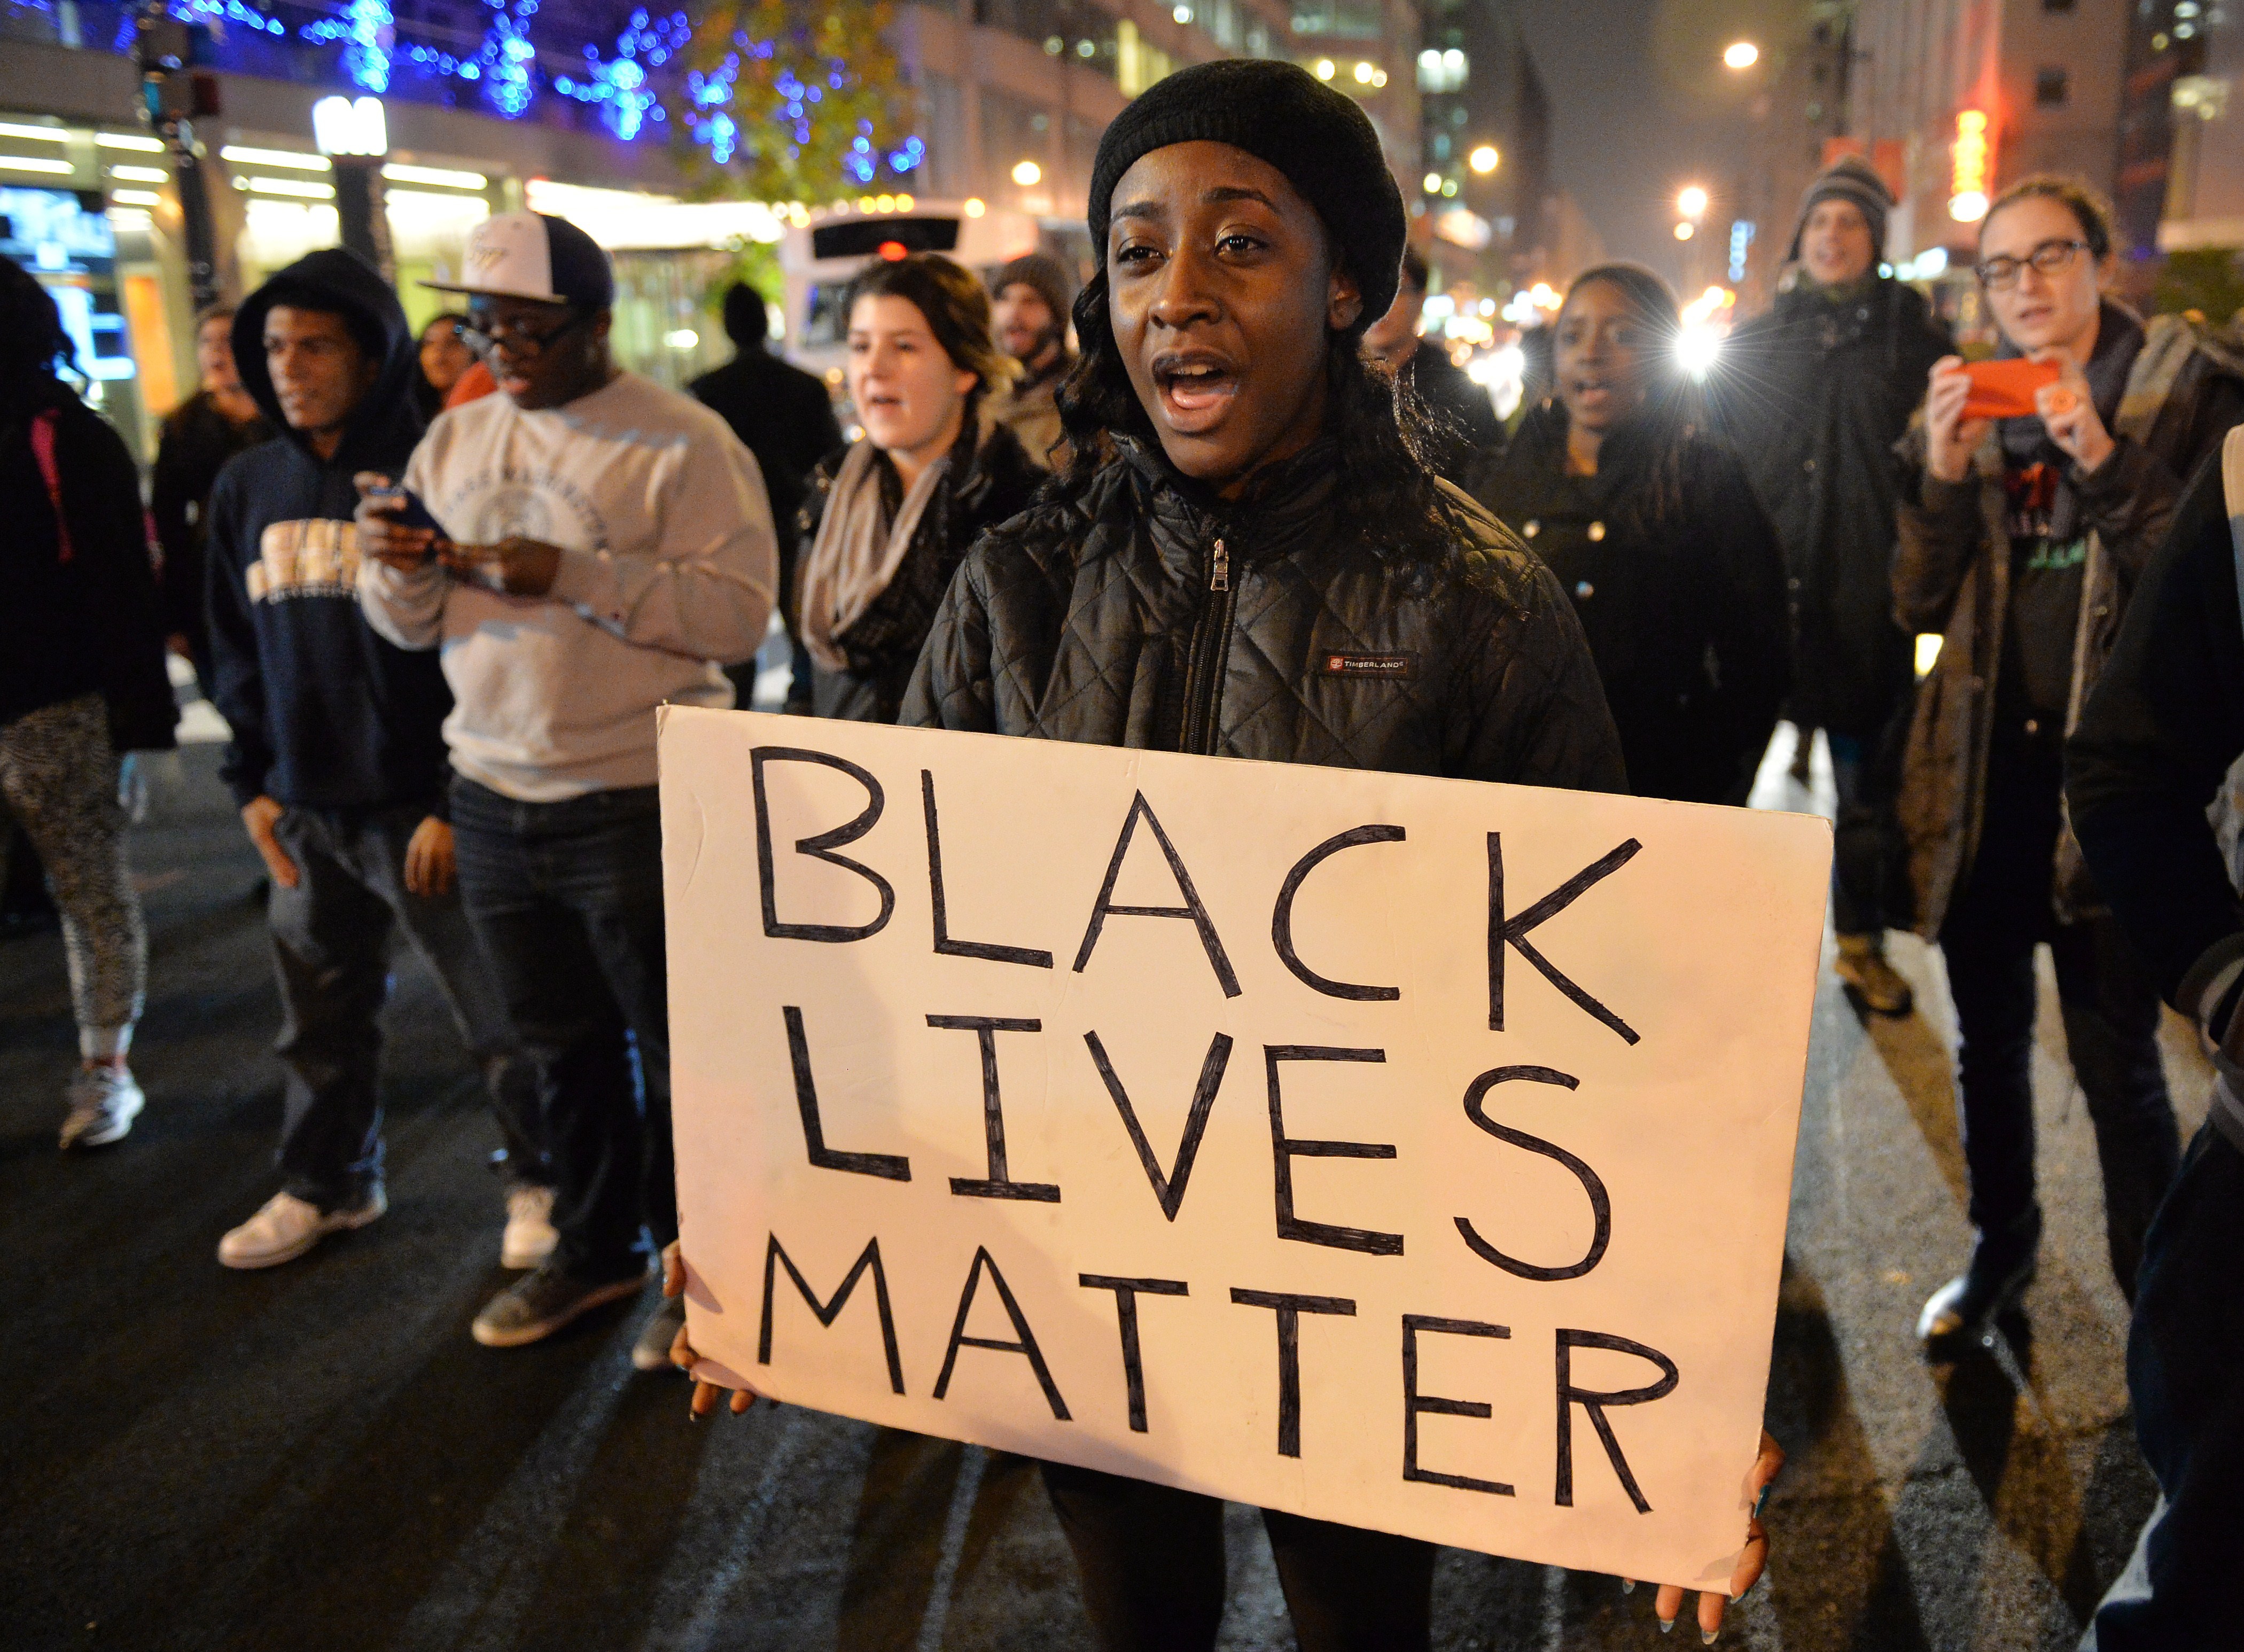 Движение чернокожих. Black Lives matter чëрный афроамериканцев. Движение Black Lives matter. Blacklivesmater. Негр с плакатом.